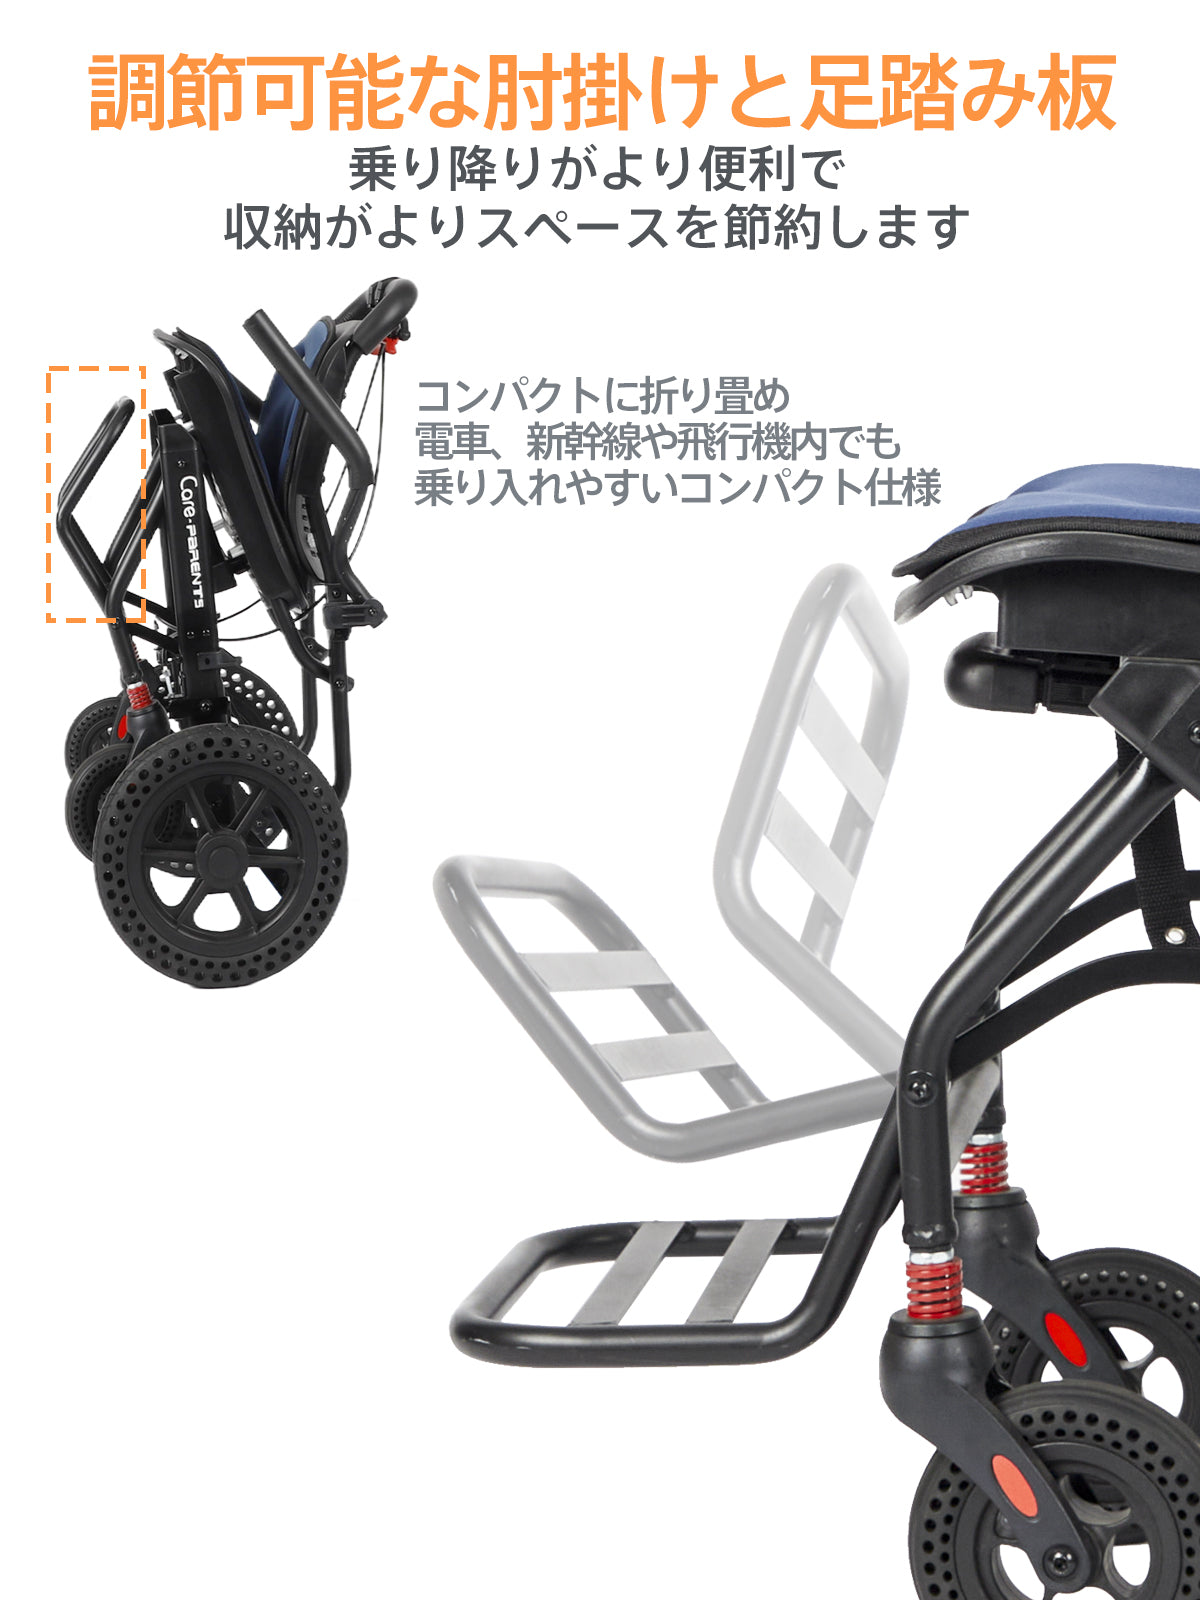 ♿介助式 車椅子 とても便利な多機能 コンパクトタイプ 安心ベルト付 